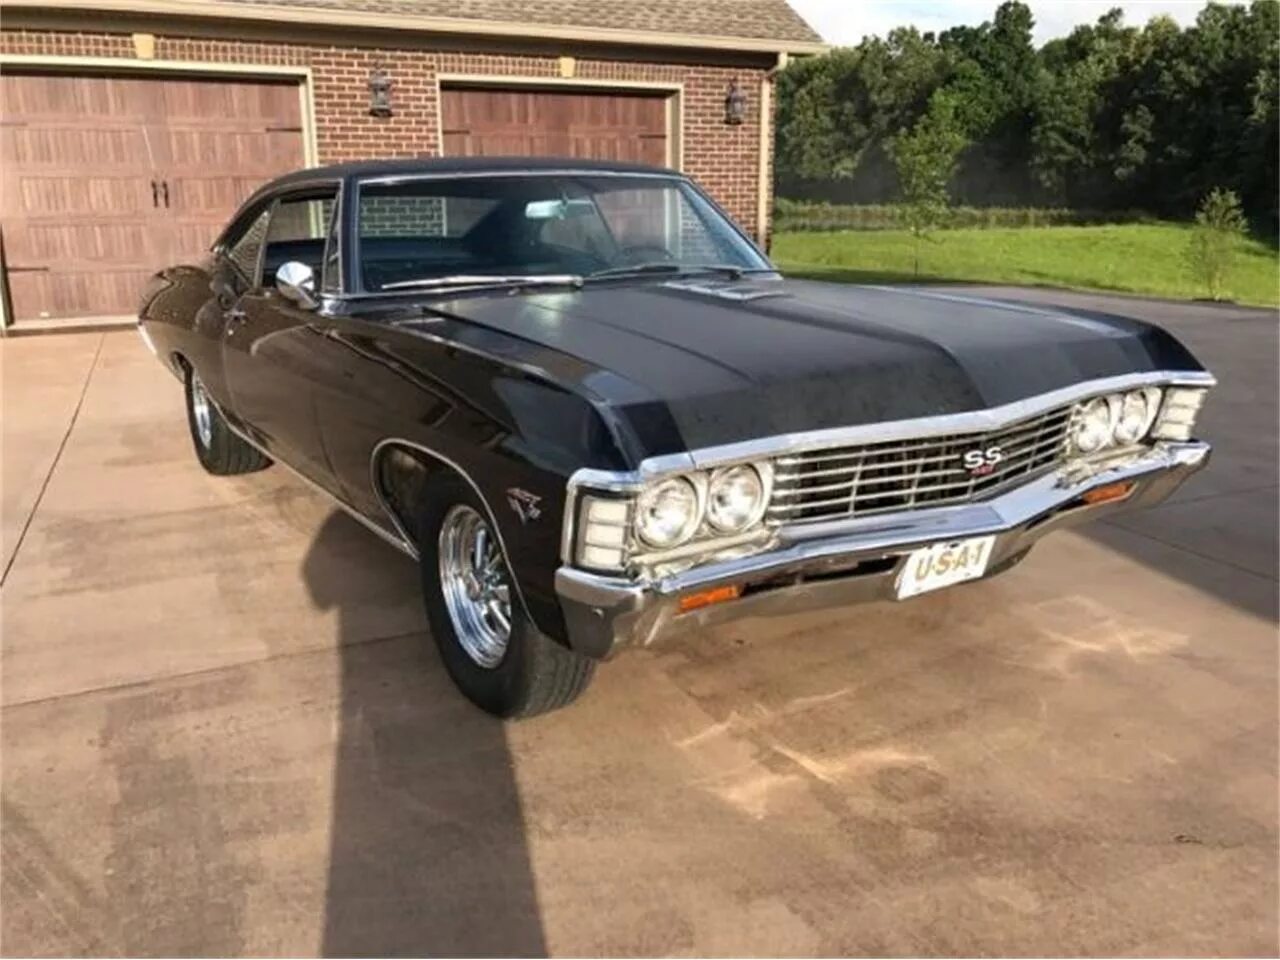 Шевроле Импала 1967. Shavrale Tempala 1967. Chevrolet Impala SS 1967. Шевроле Импала 1967 черная.